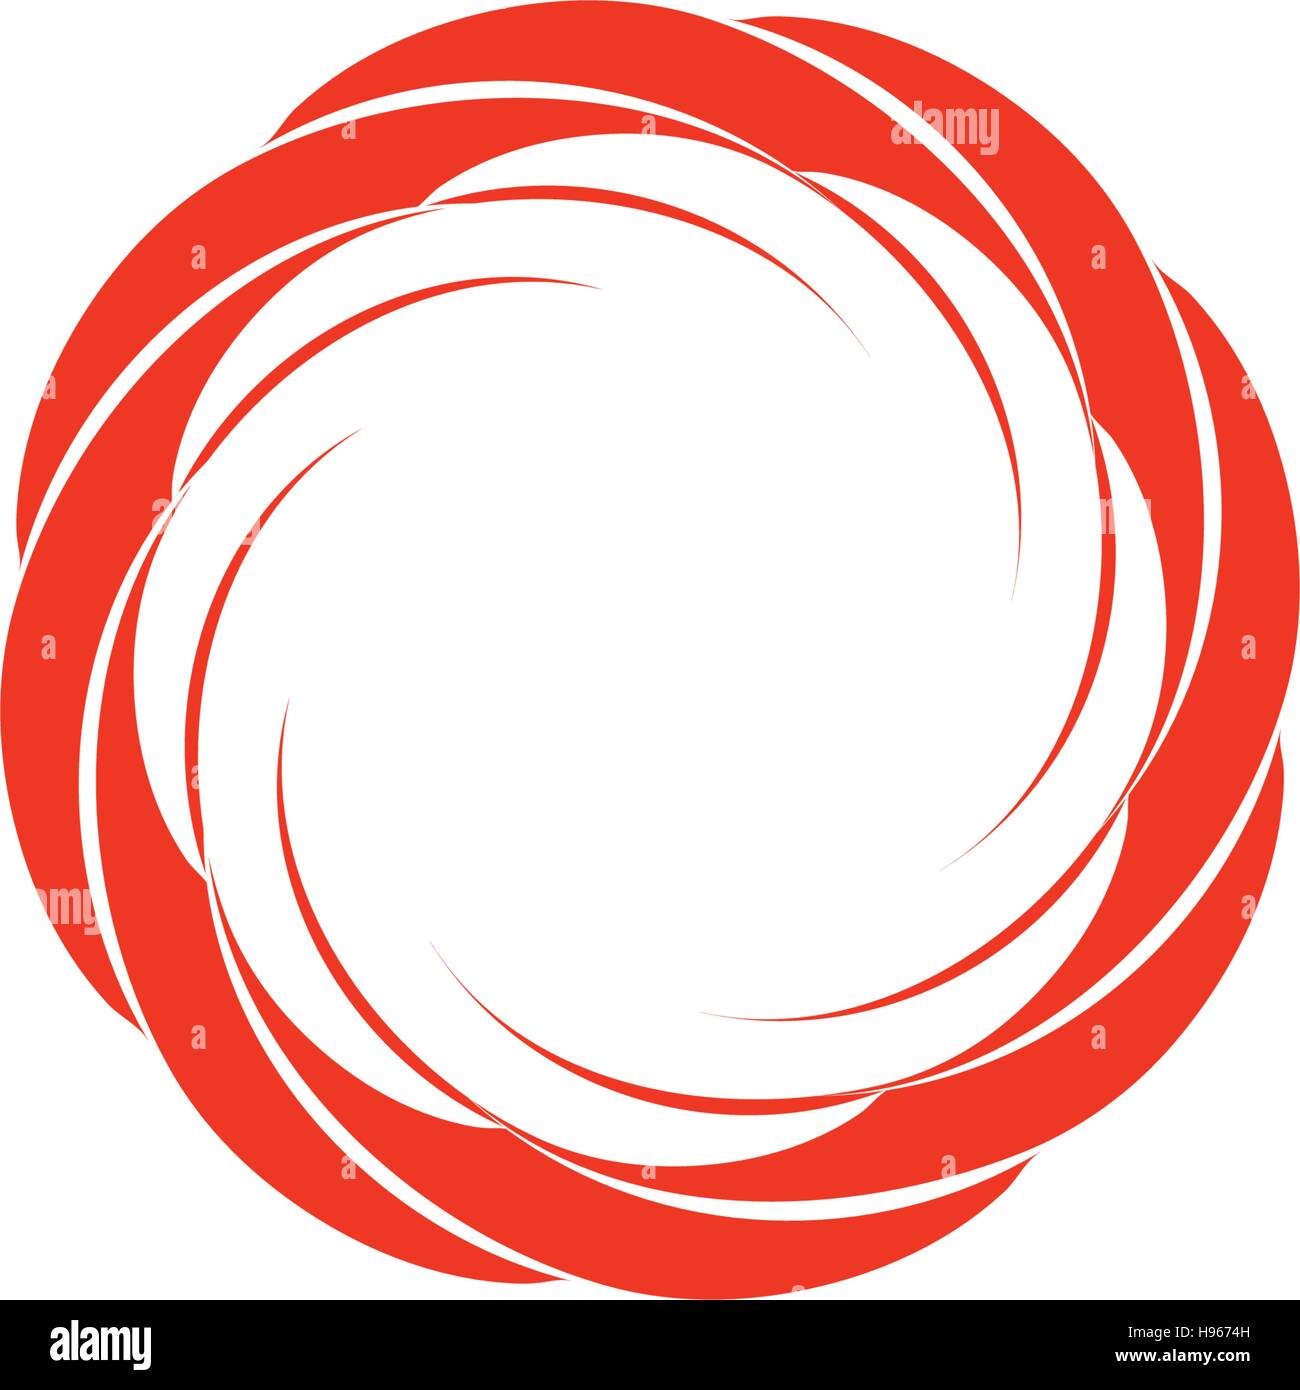 Isolierte Abstrakt rot Runde Sonnen-Logo. Runde Form-Logo. Wirbel, Tornado und Hurrikan-Symbol. Spining hypnotischen Spirale Zeichen. Foto-Objektiv-Symbol. Vektor-Rad-Illustration. Stock Vektor